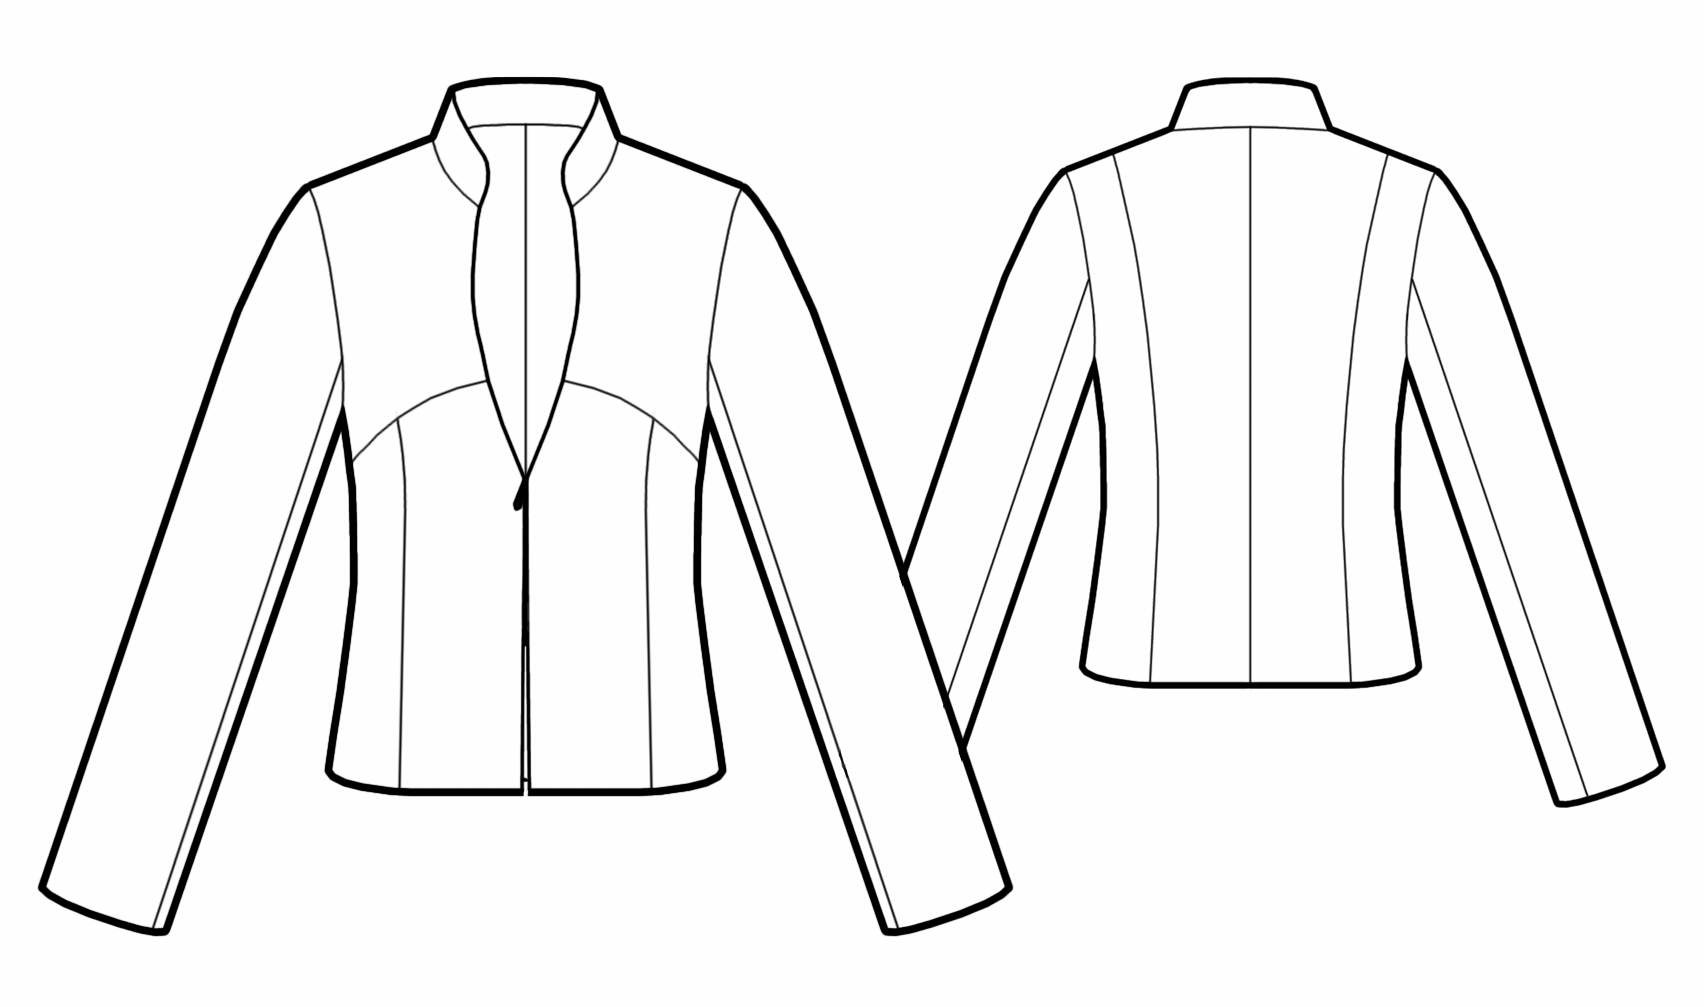 Zipped Jacket Sewing Pattern 5543. Madetomeasure sewing pattern